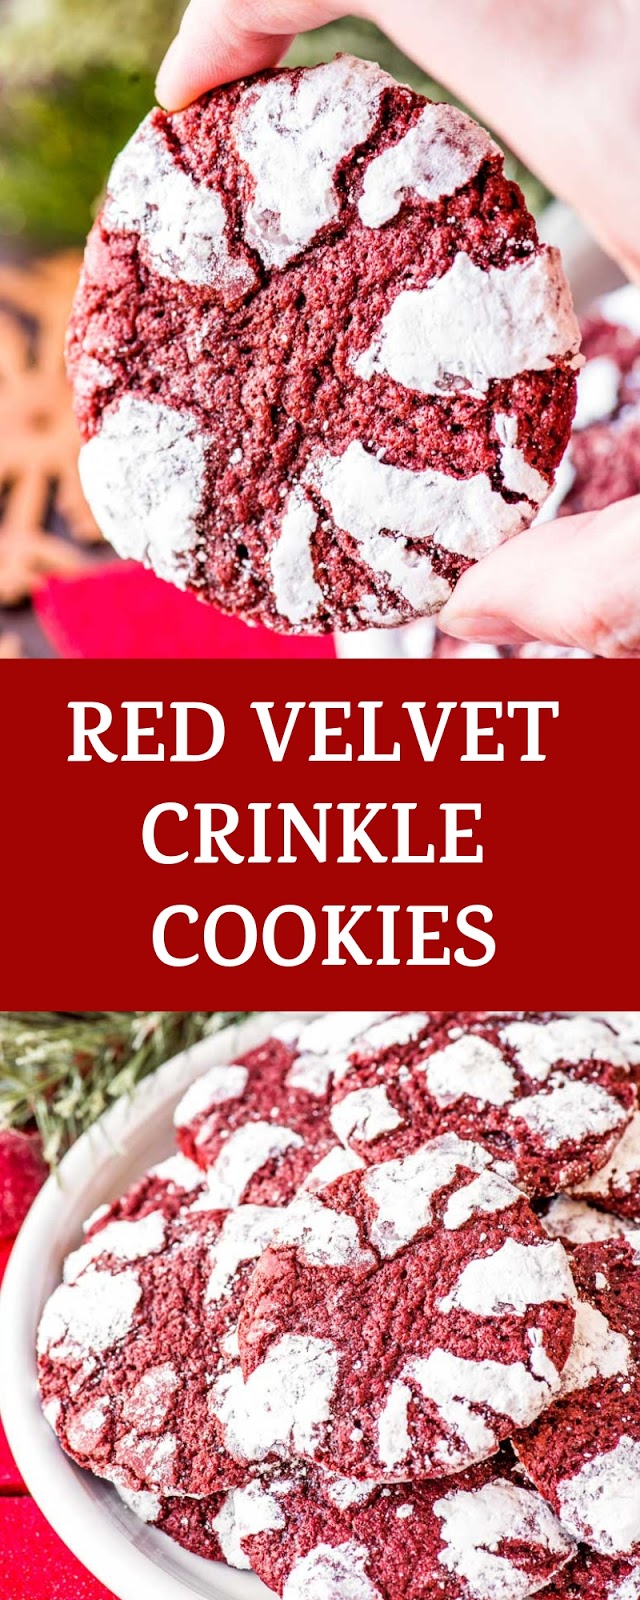 RED VELVET CRINKLE COOKIES